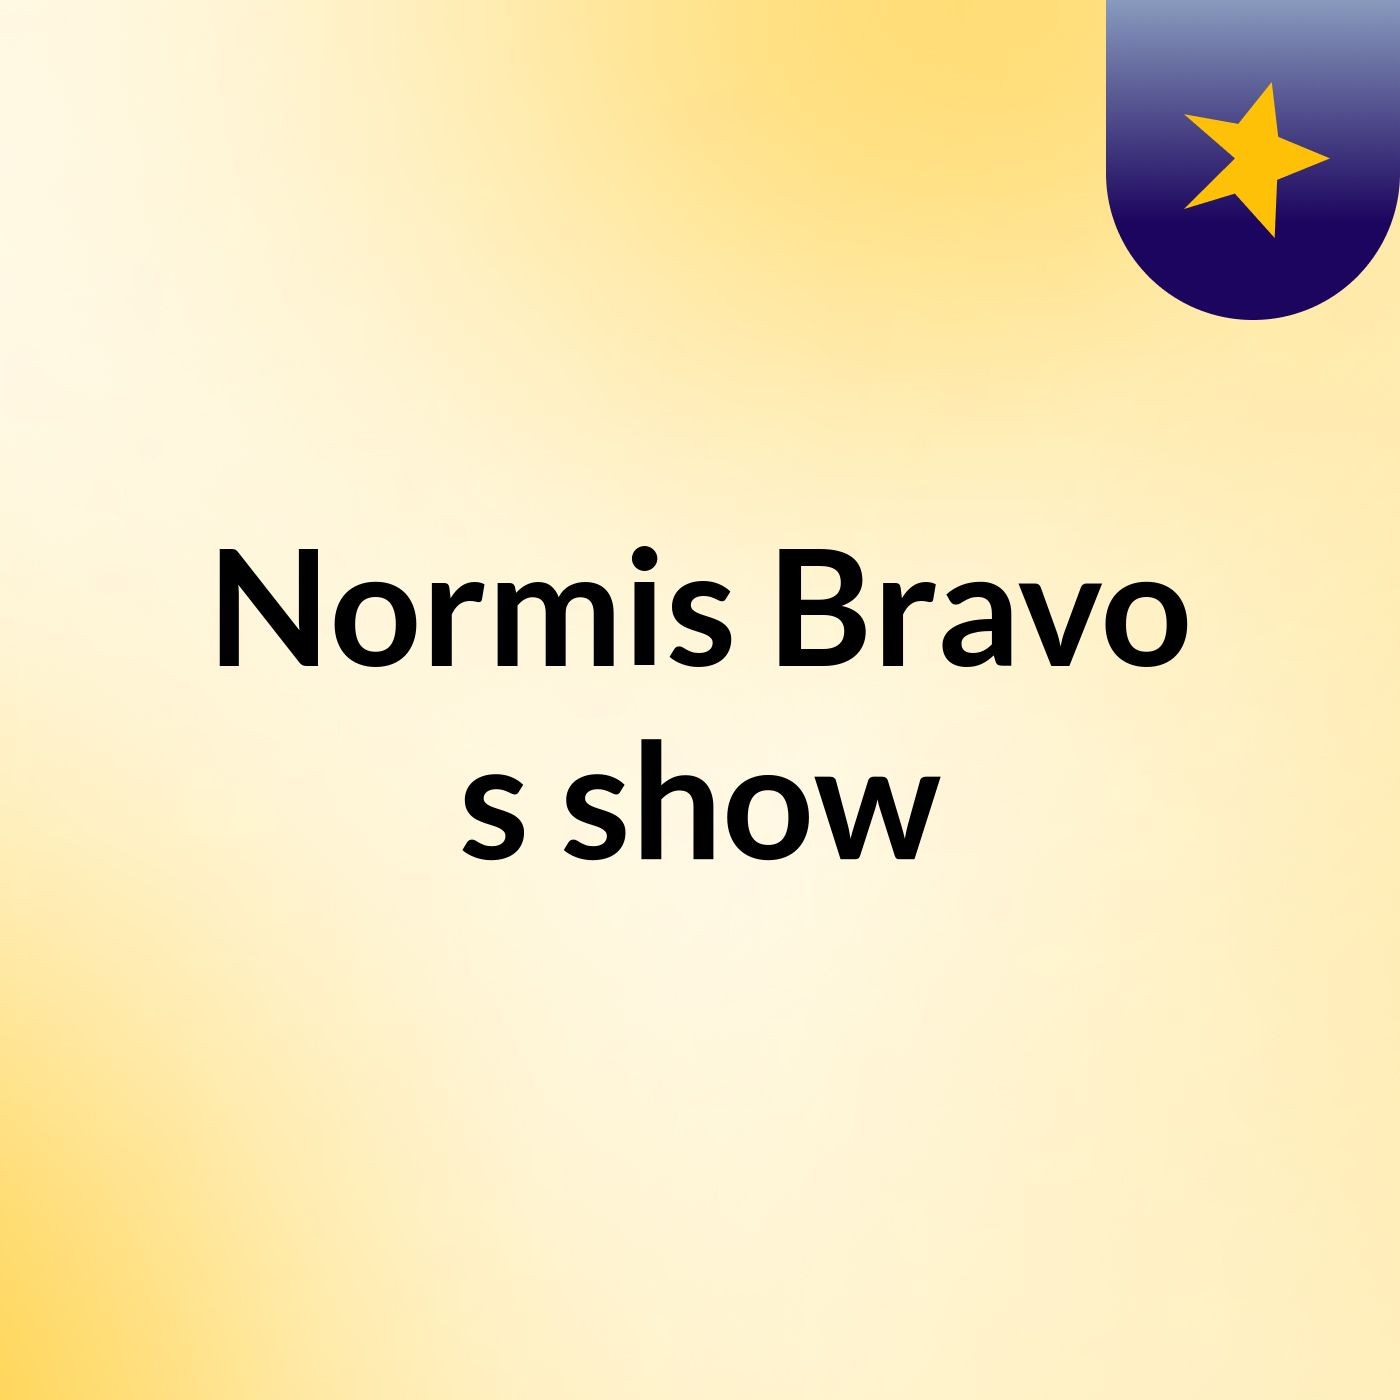 Normis Bravo's show